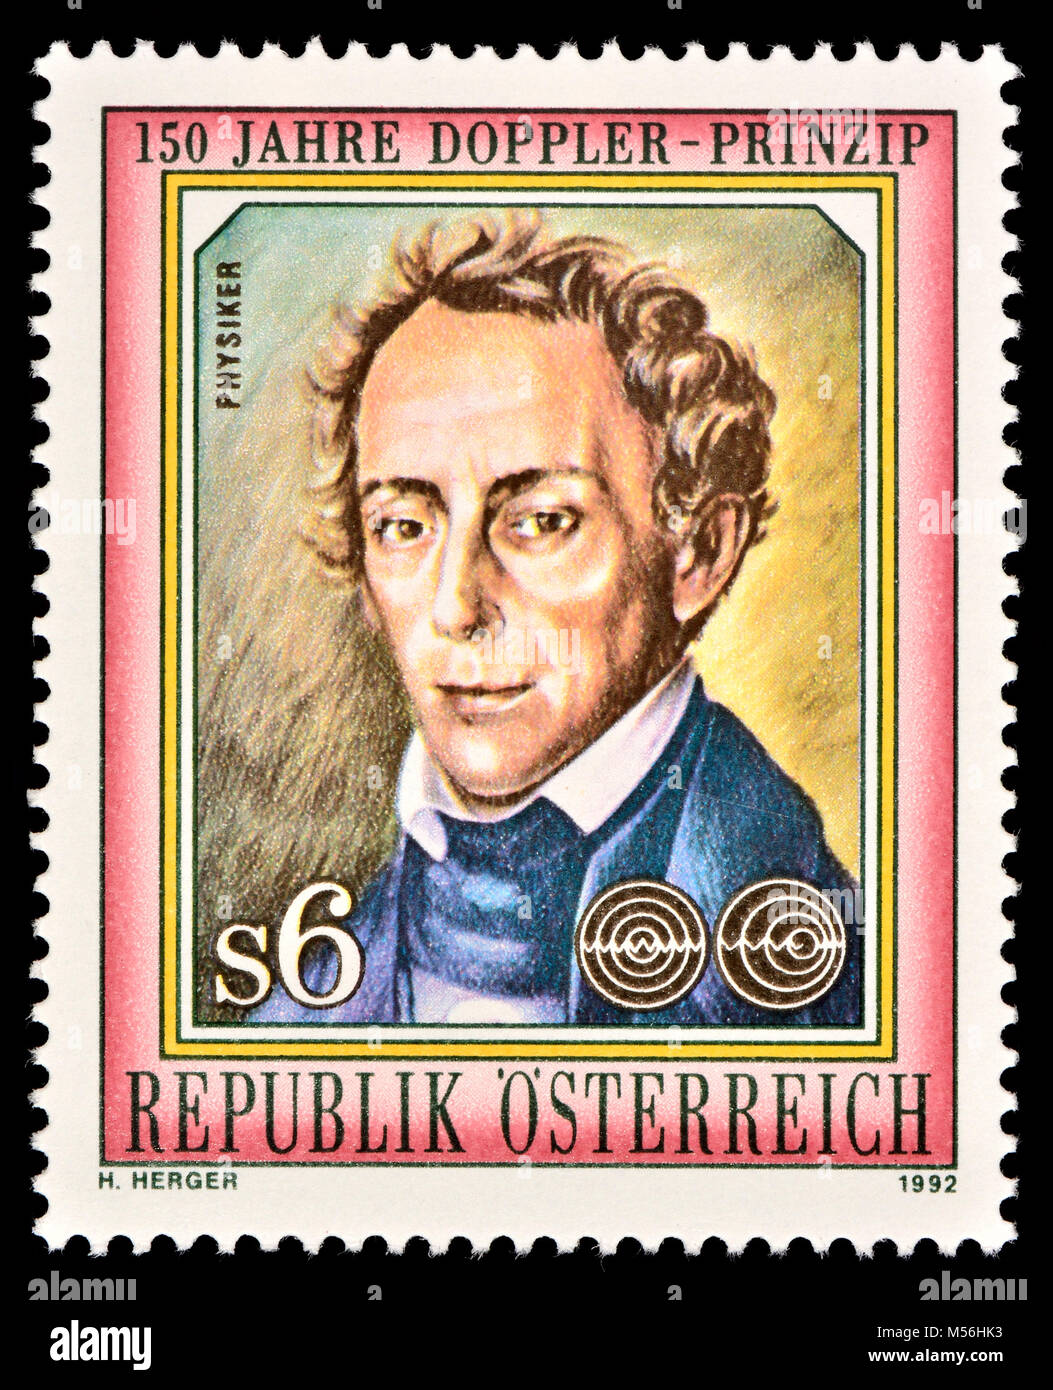 Österreichische Briefmarke (1992): Christian Andreas Doppler (1803 - 1853), österreichischer Mathematiker und Physiker. Er ist bekannt für seine Prinzip - Kno Stockfoto